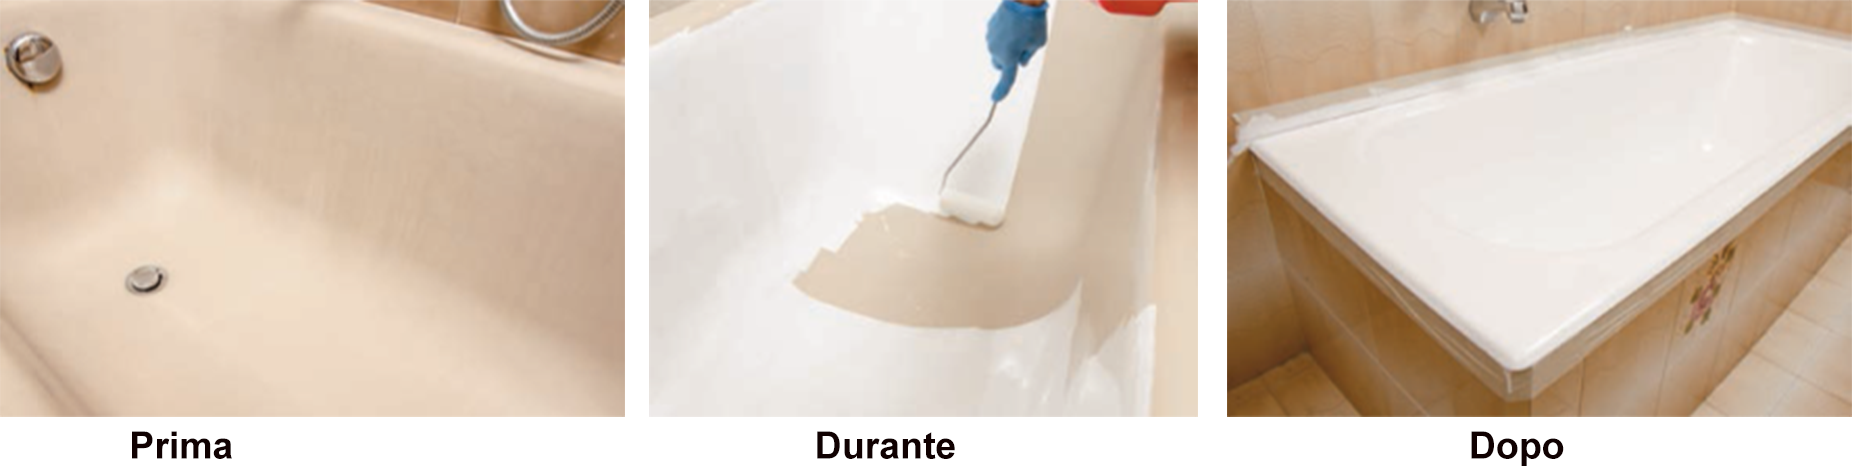 Rinnovare le mattonelle del bagno: smalto bicomponente o resina